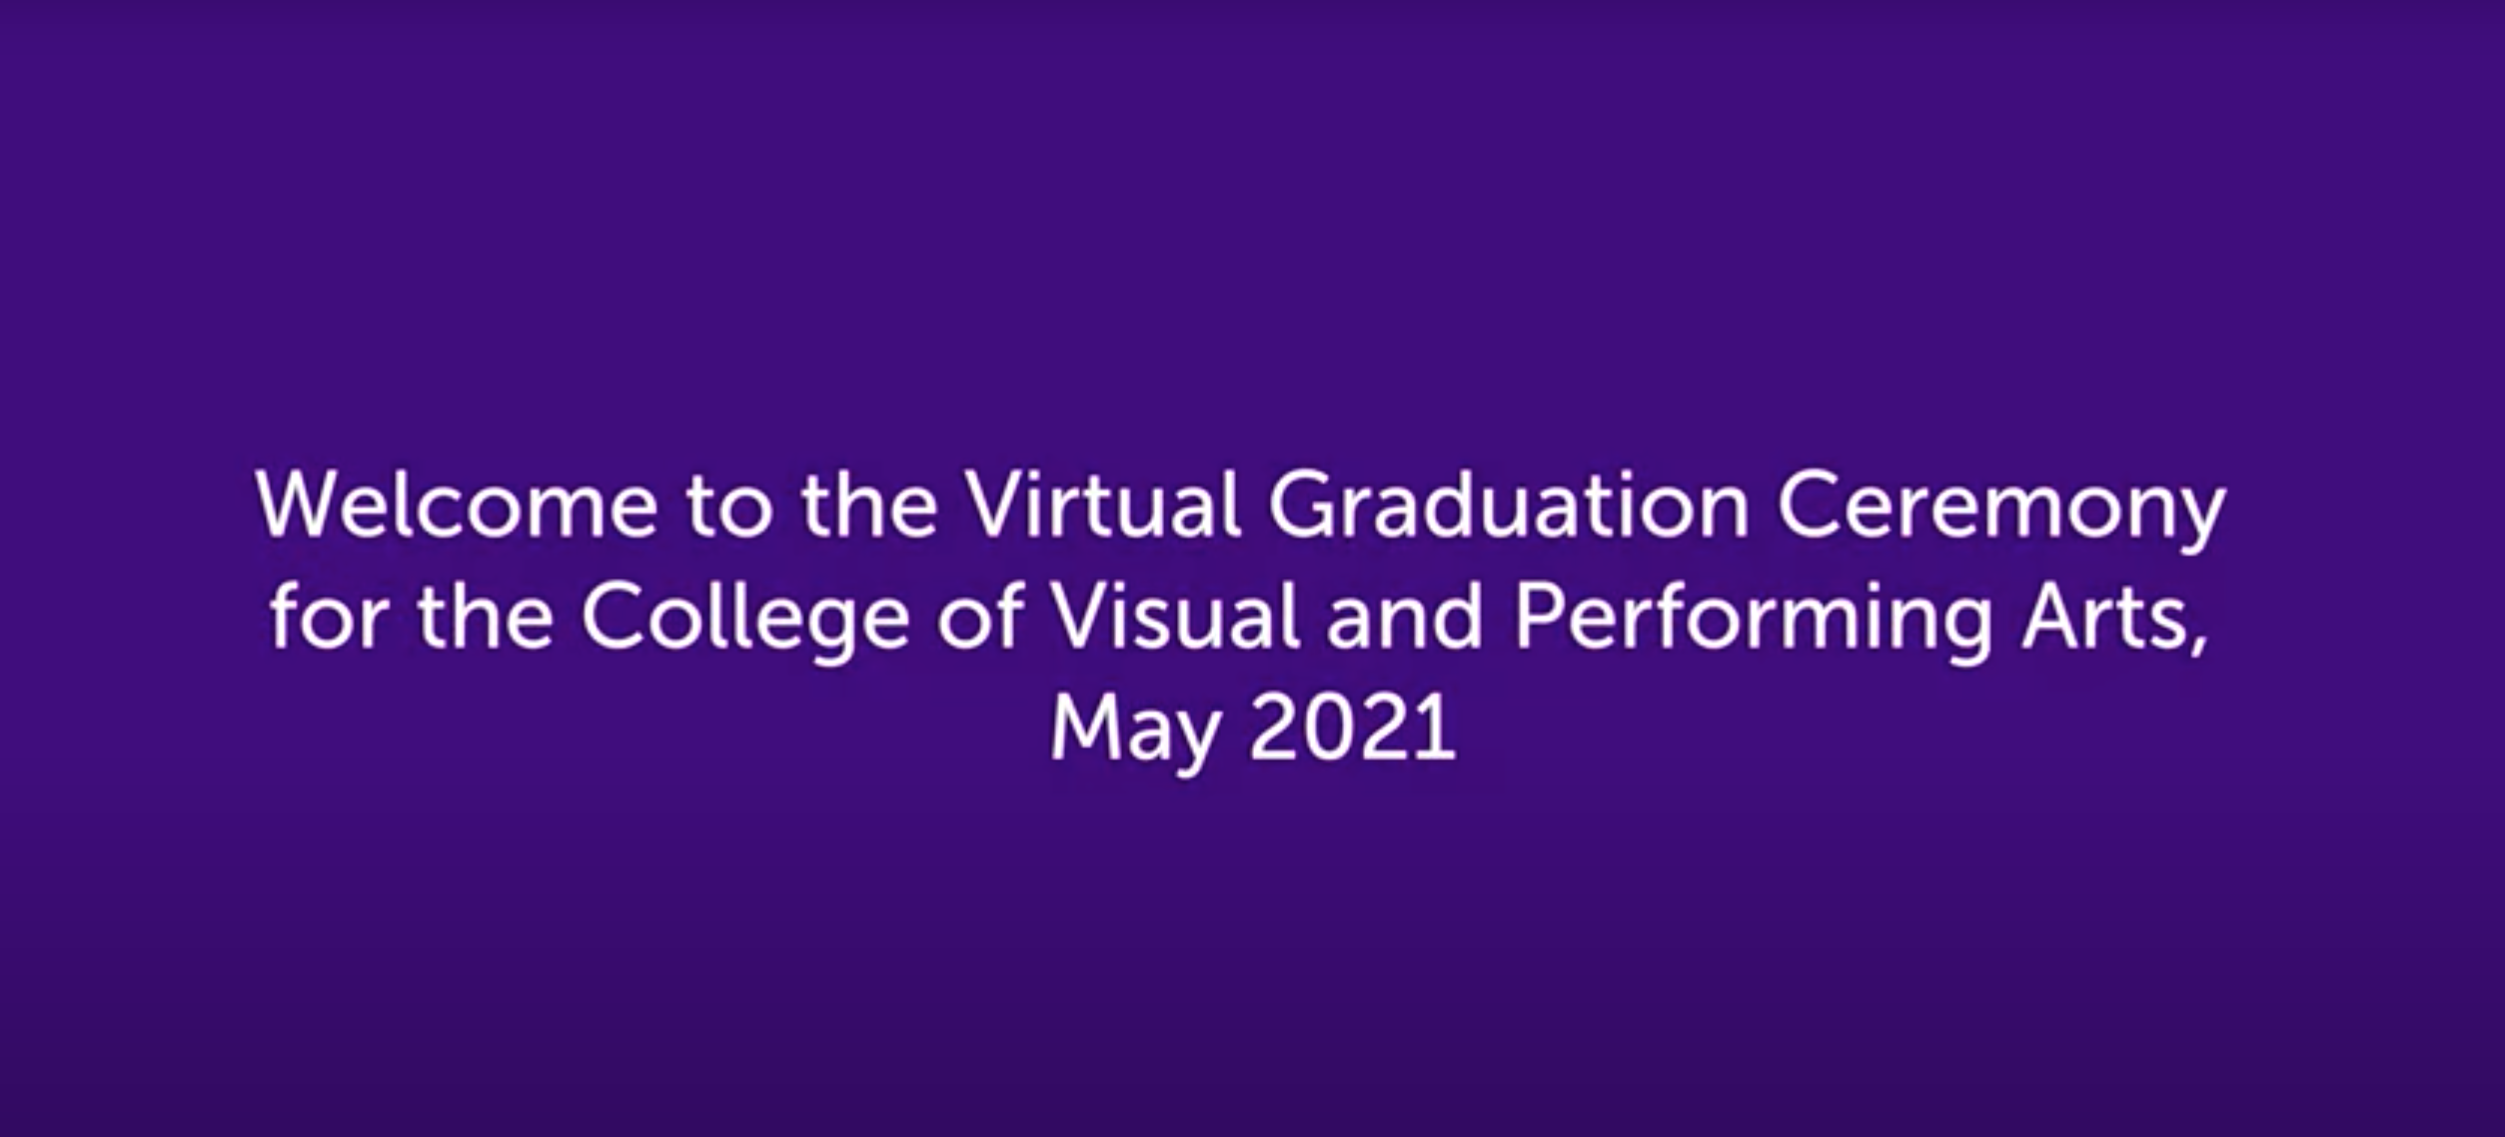 SADAH Virtual Graduation Video